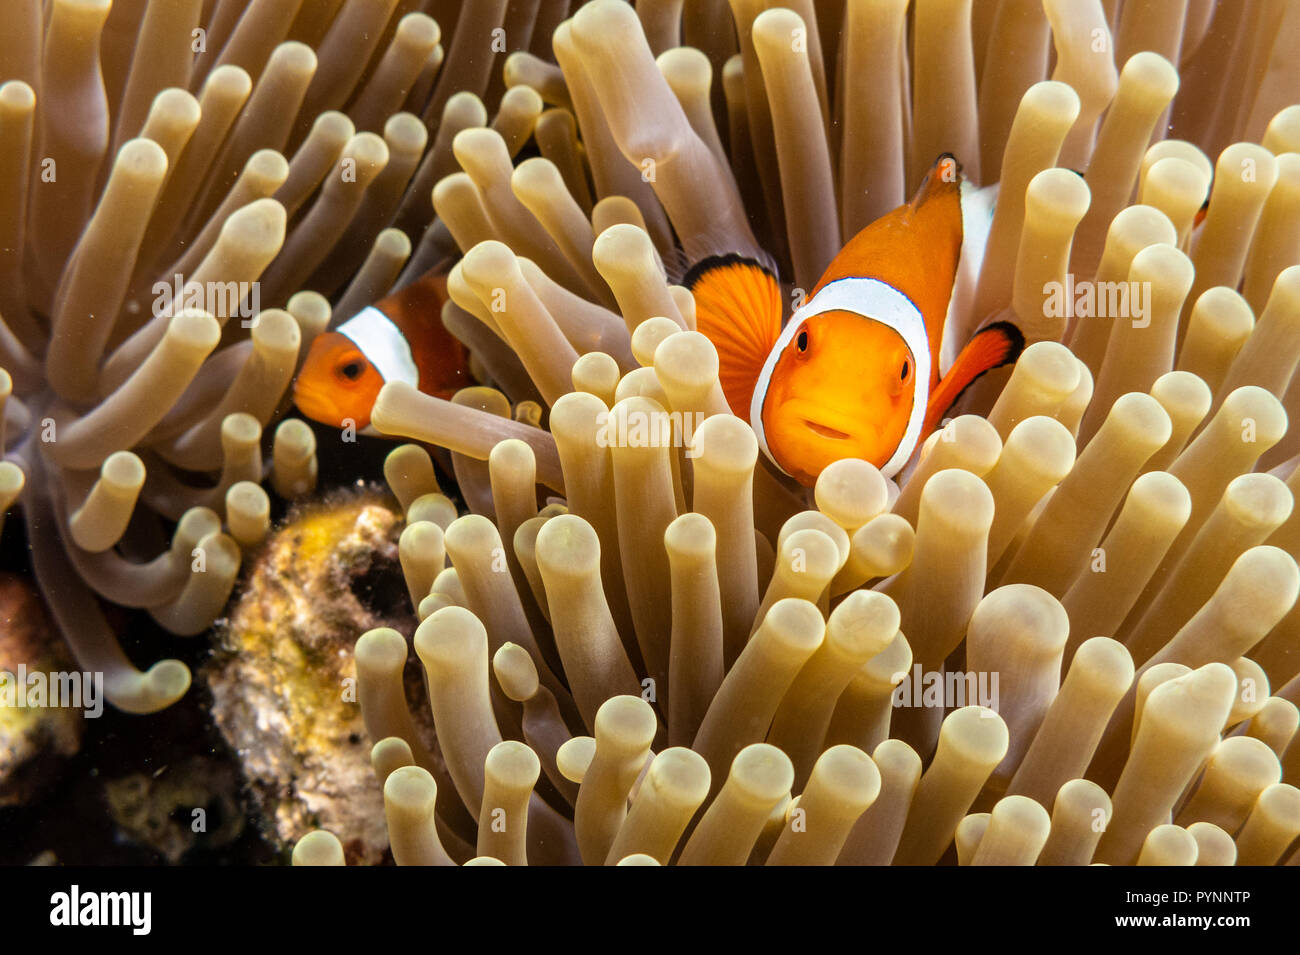 Clownfisch Amphiprion ocellaris in Seeanemone versteckt, Indonesien Stockfoto